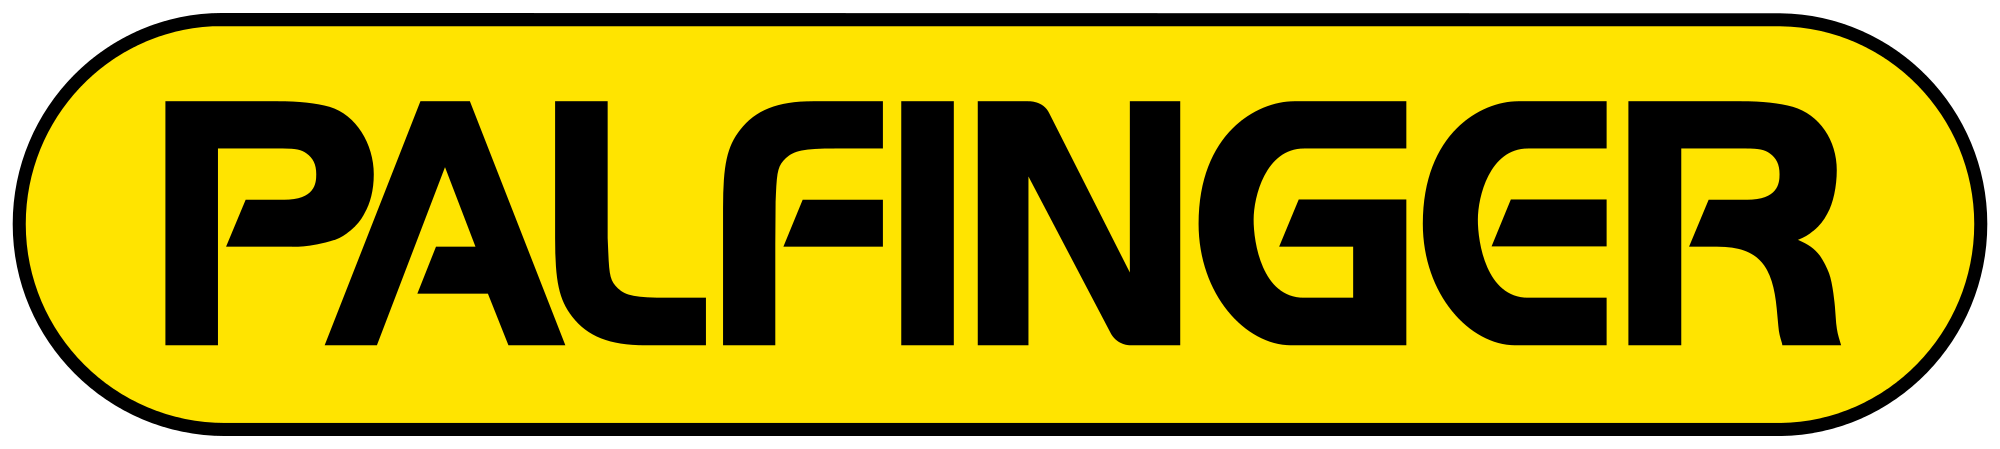 Palfinger logo.svg